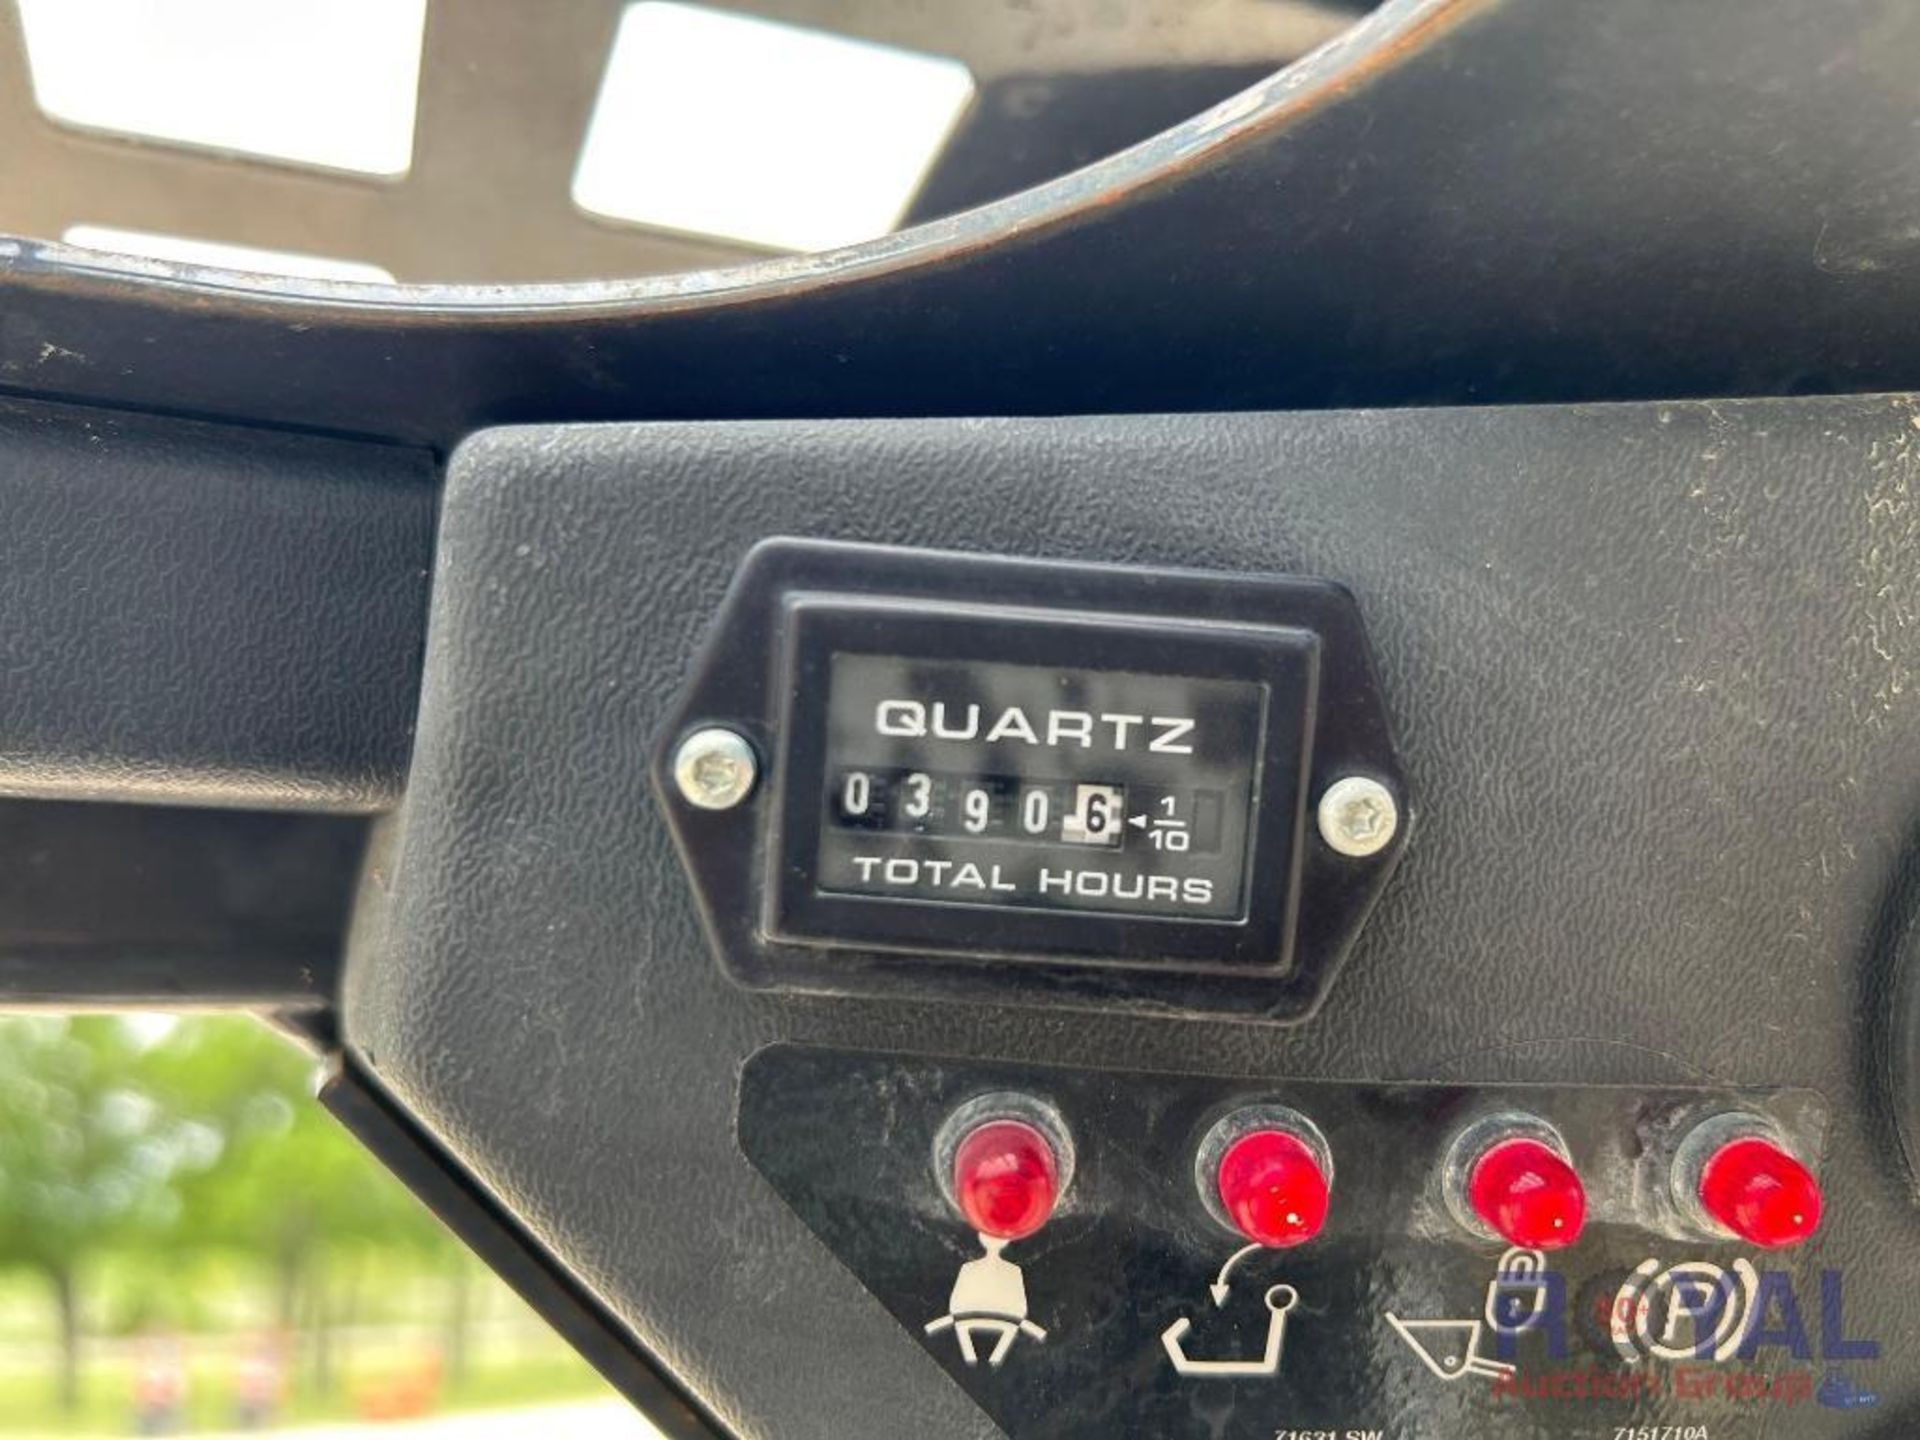 2019 Bobcat S70 Compact Wheel Loader Skid Steer - Image 6 of 28